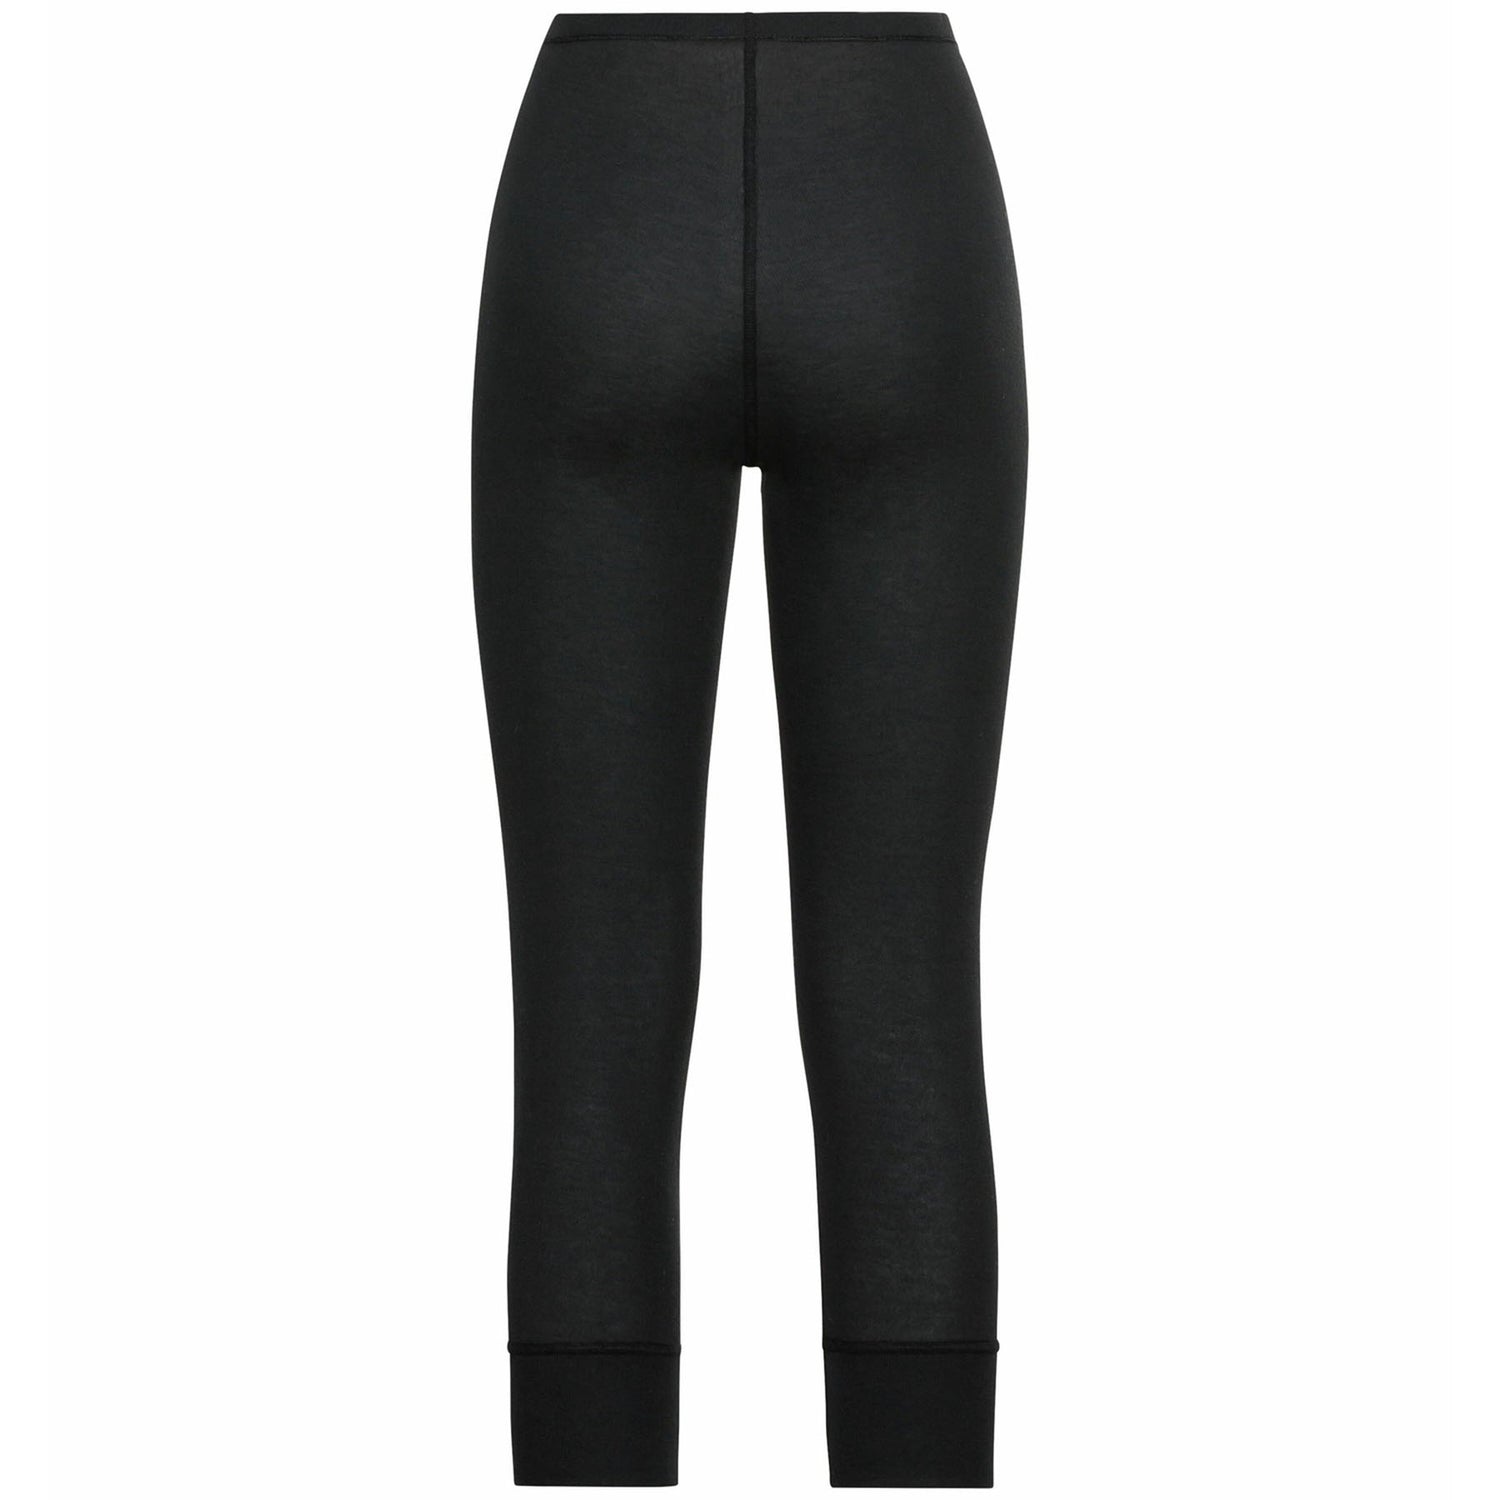 Women's Active Warm Eco 3/4 Baselayer Pants